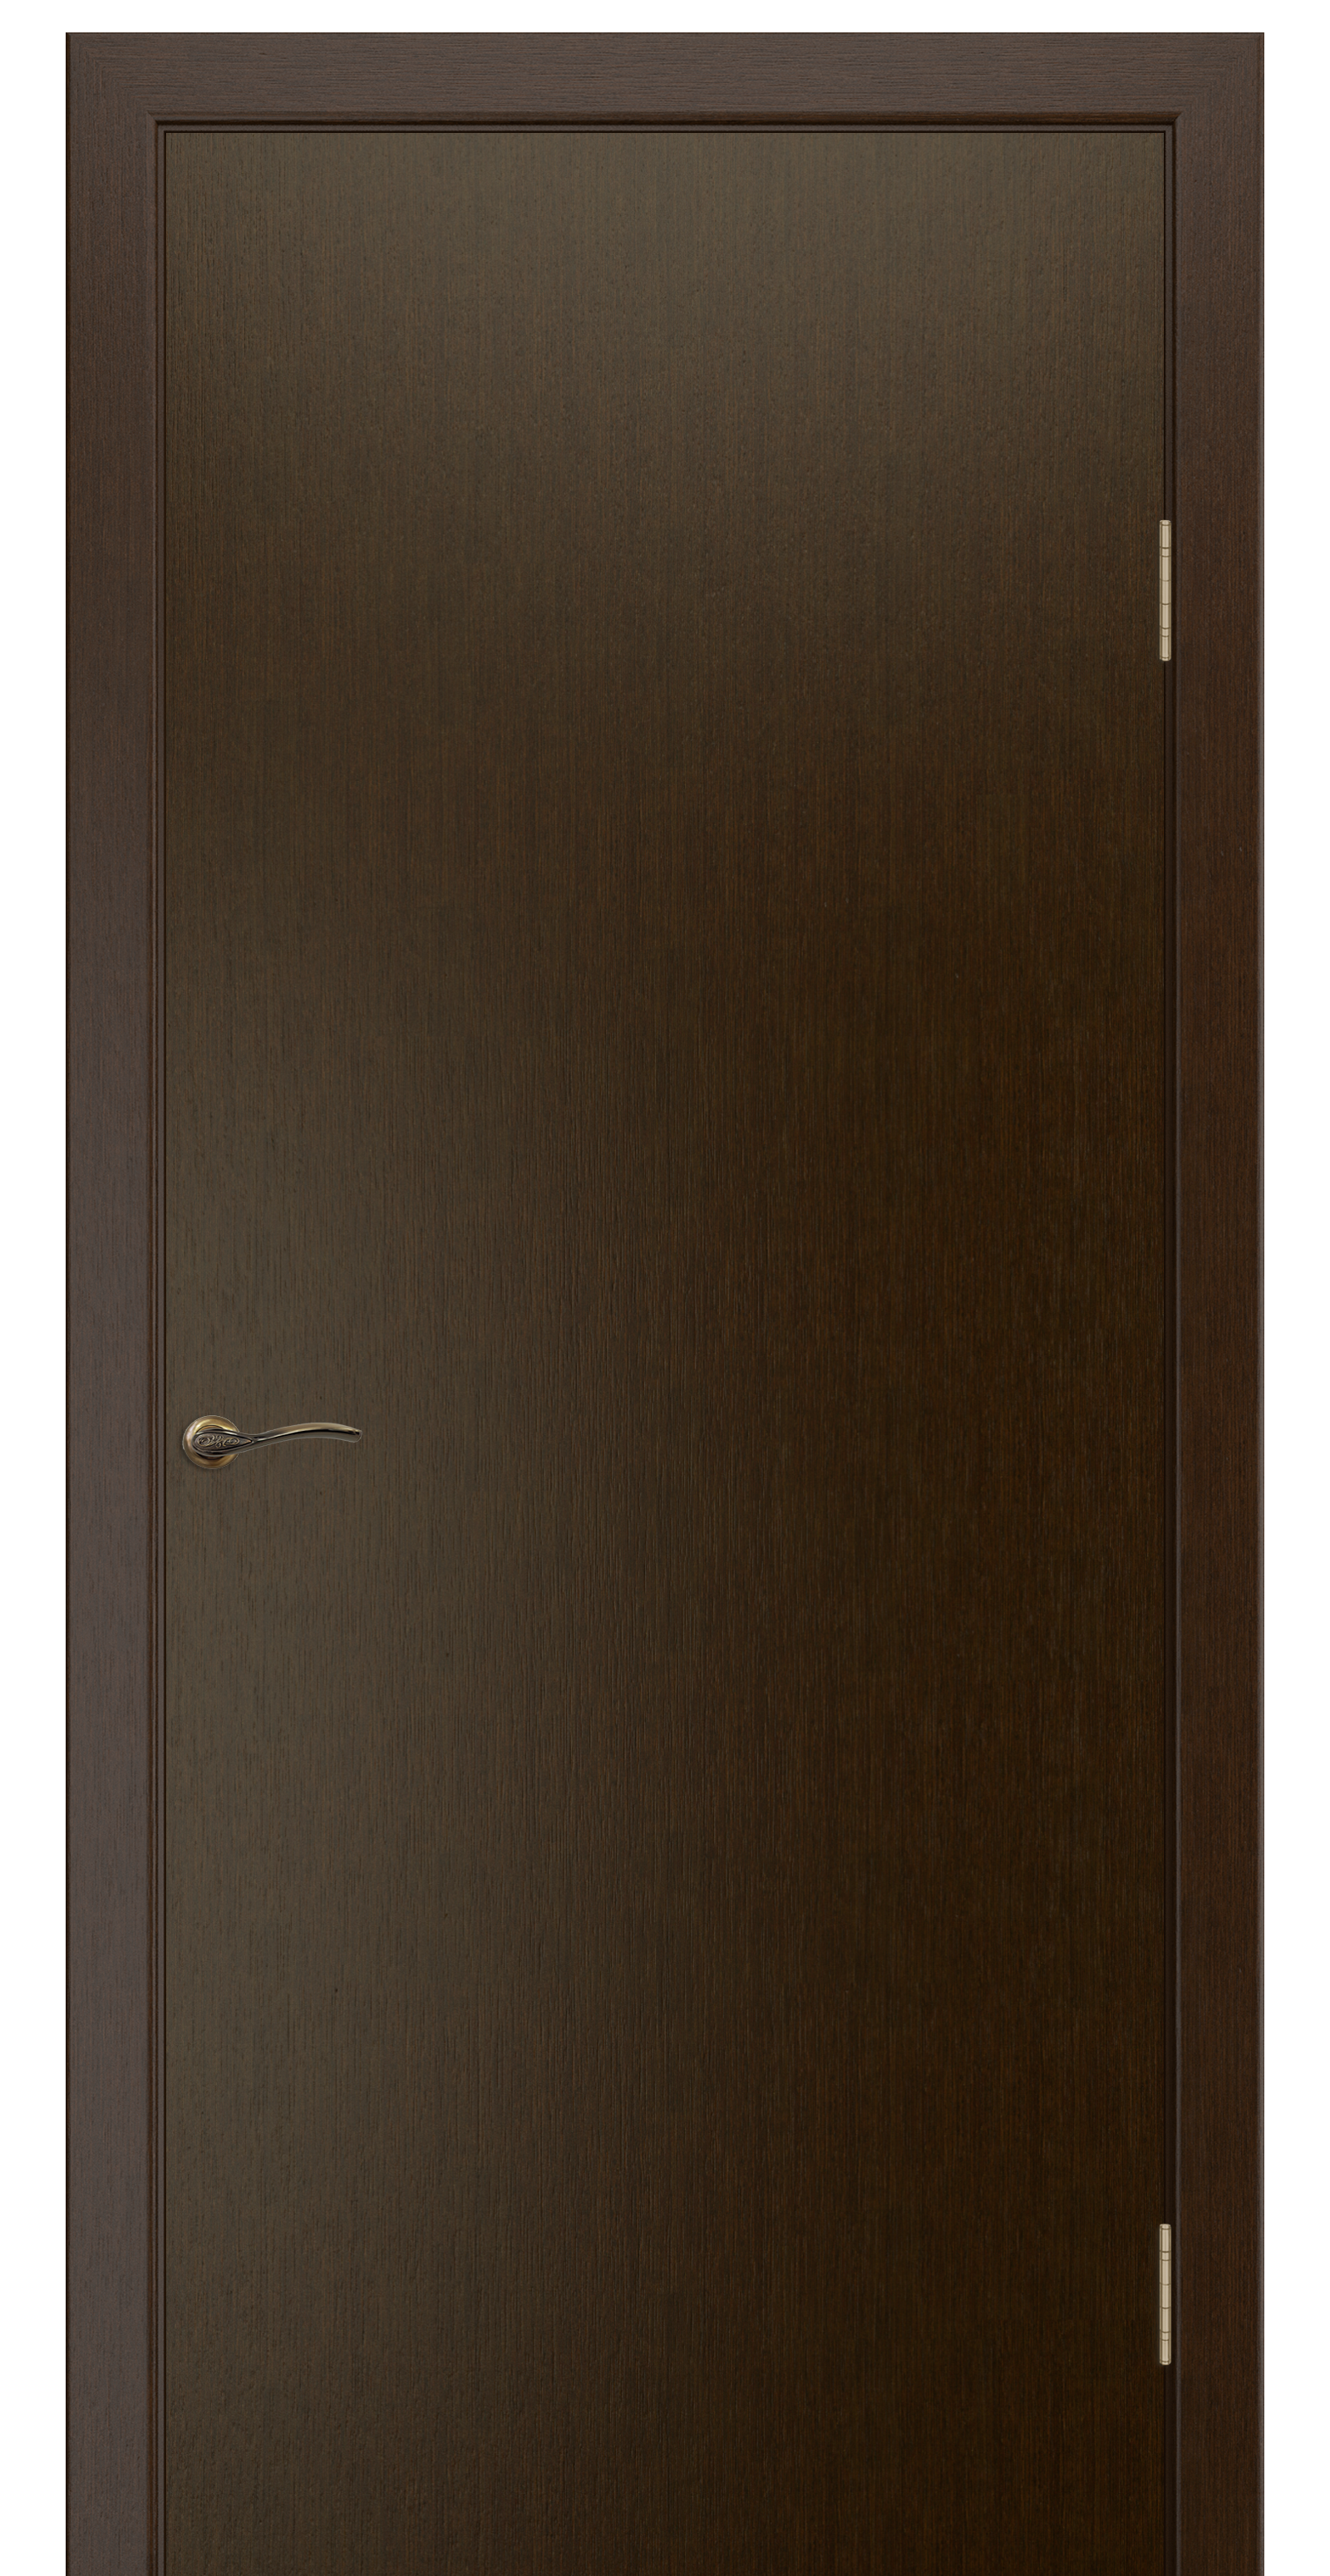 Межкомнатная дверь «Ника 2». Вид отделки  Cтандартный наличник